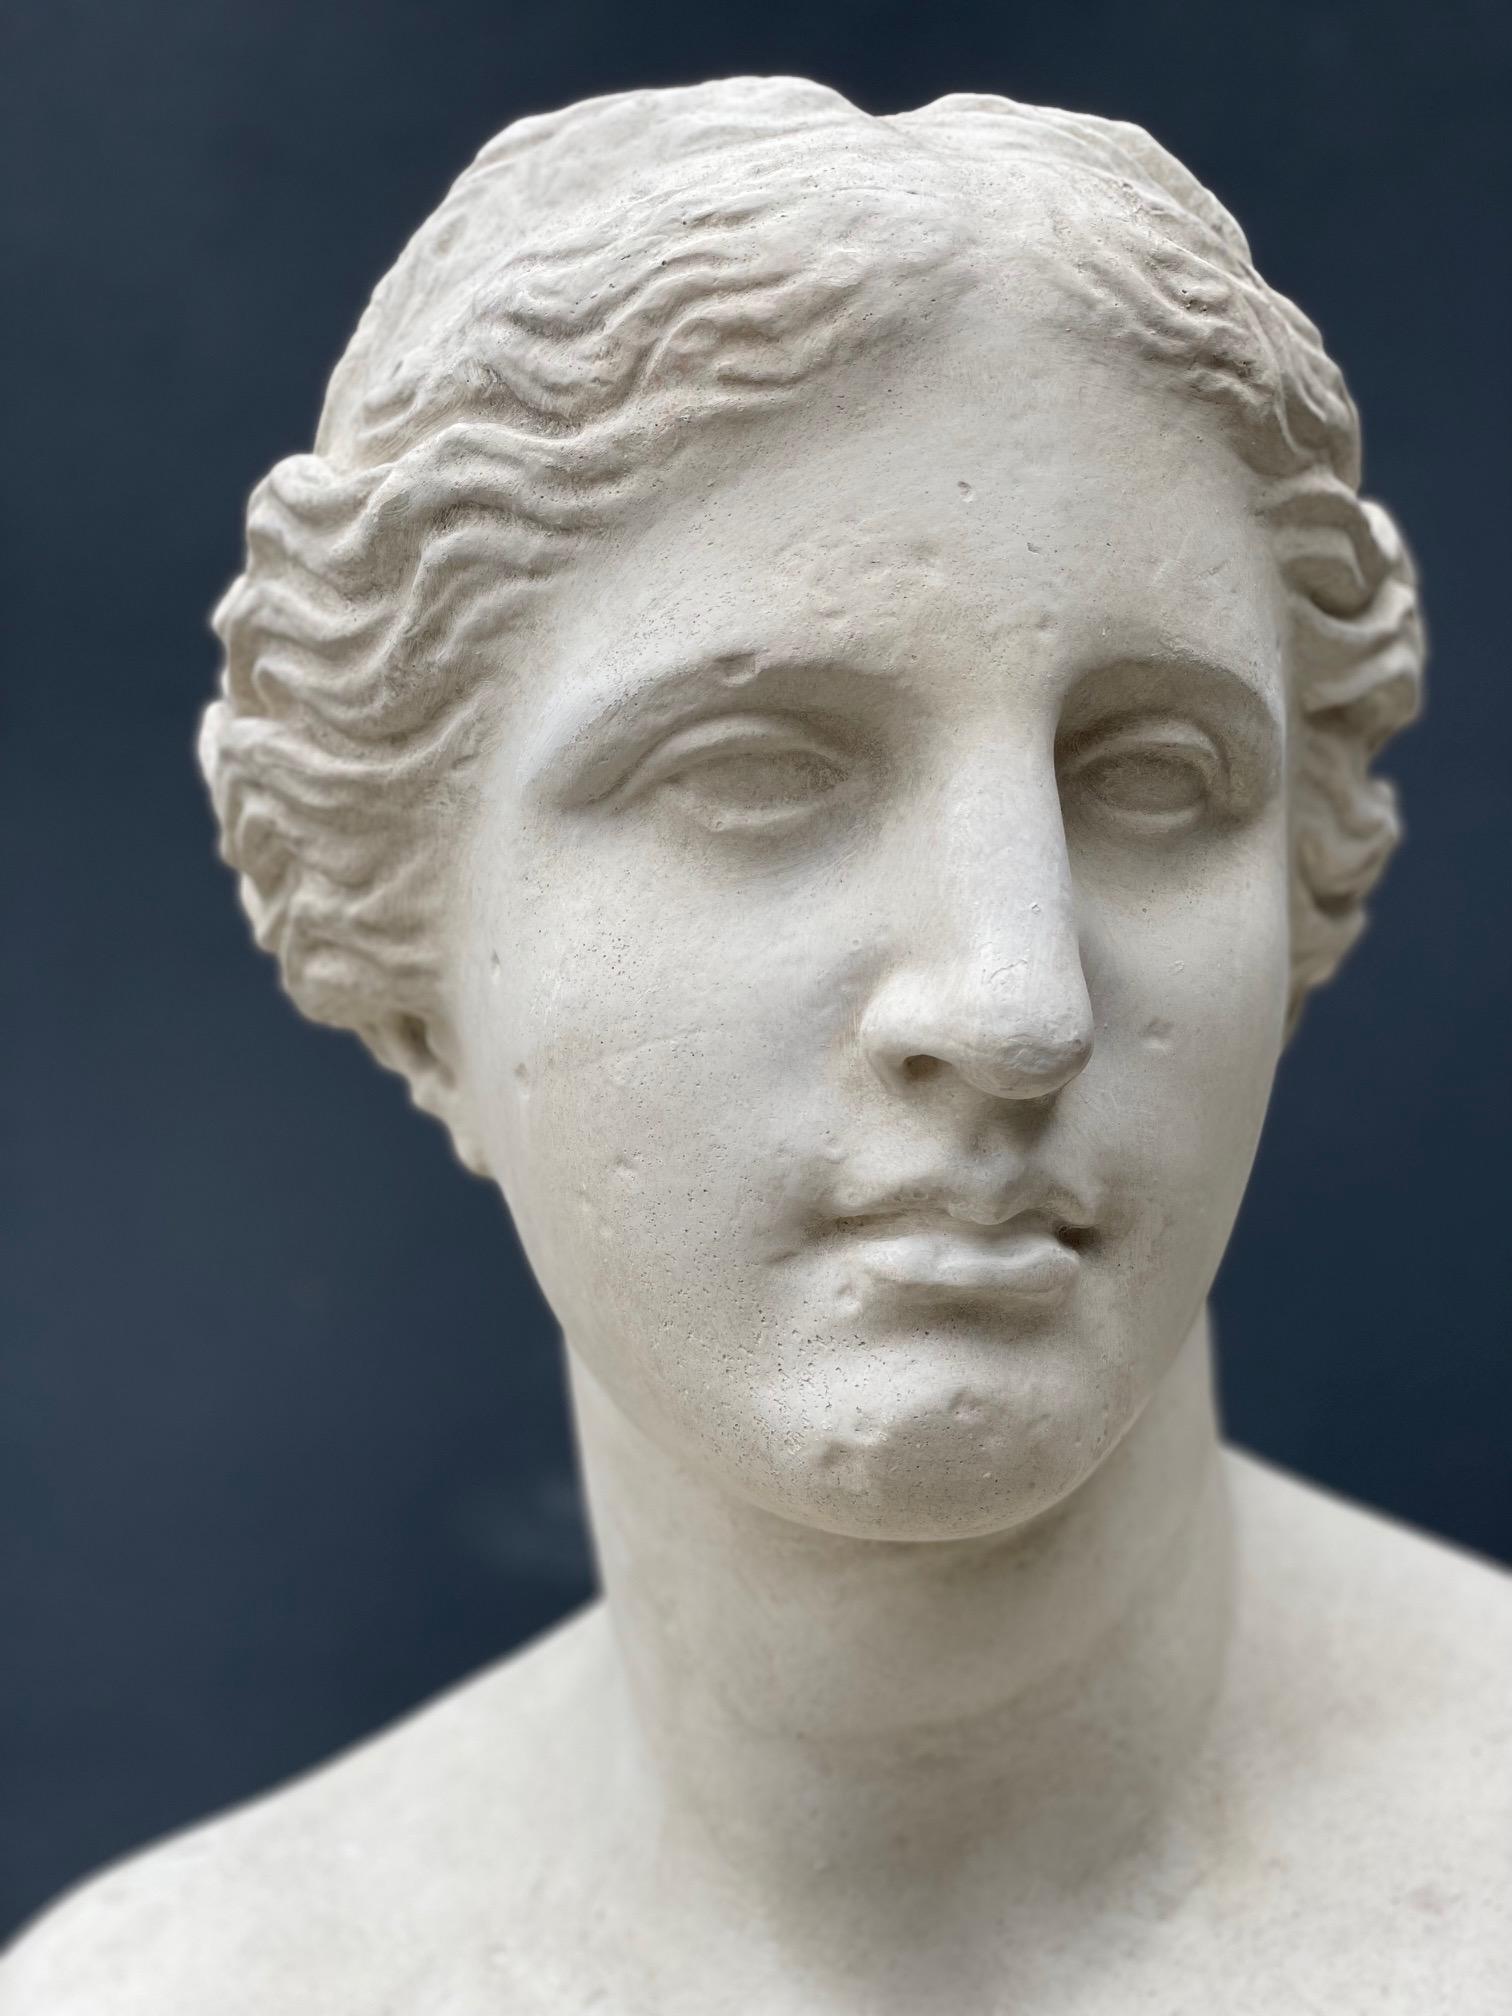 Un buste en plâtre de la déesse Aphrodite Vénus.

Une belle addition décorative à votre intérieur.